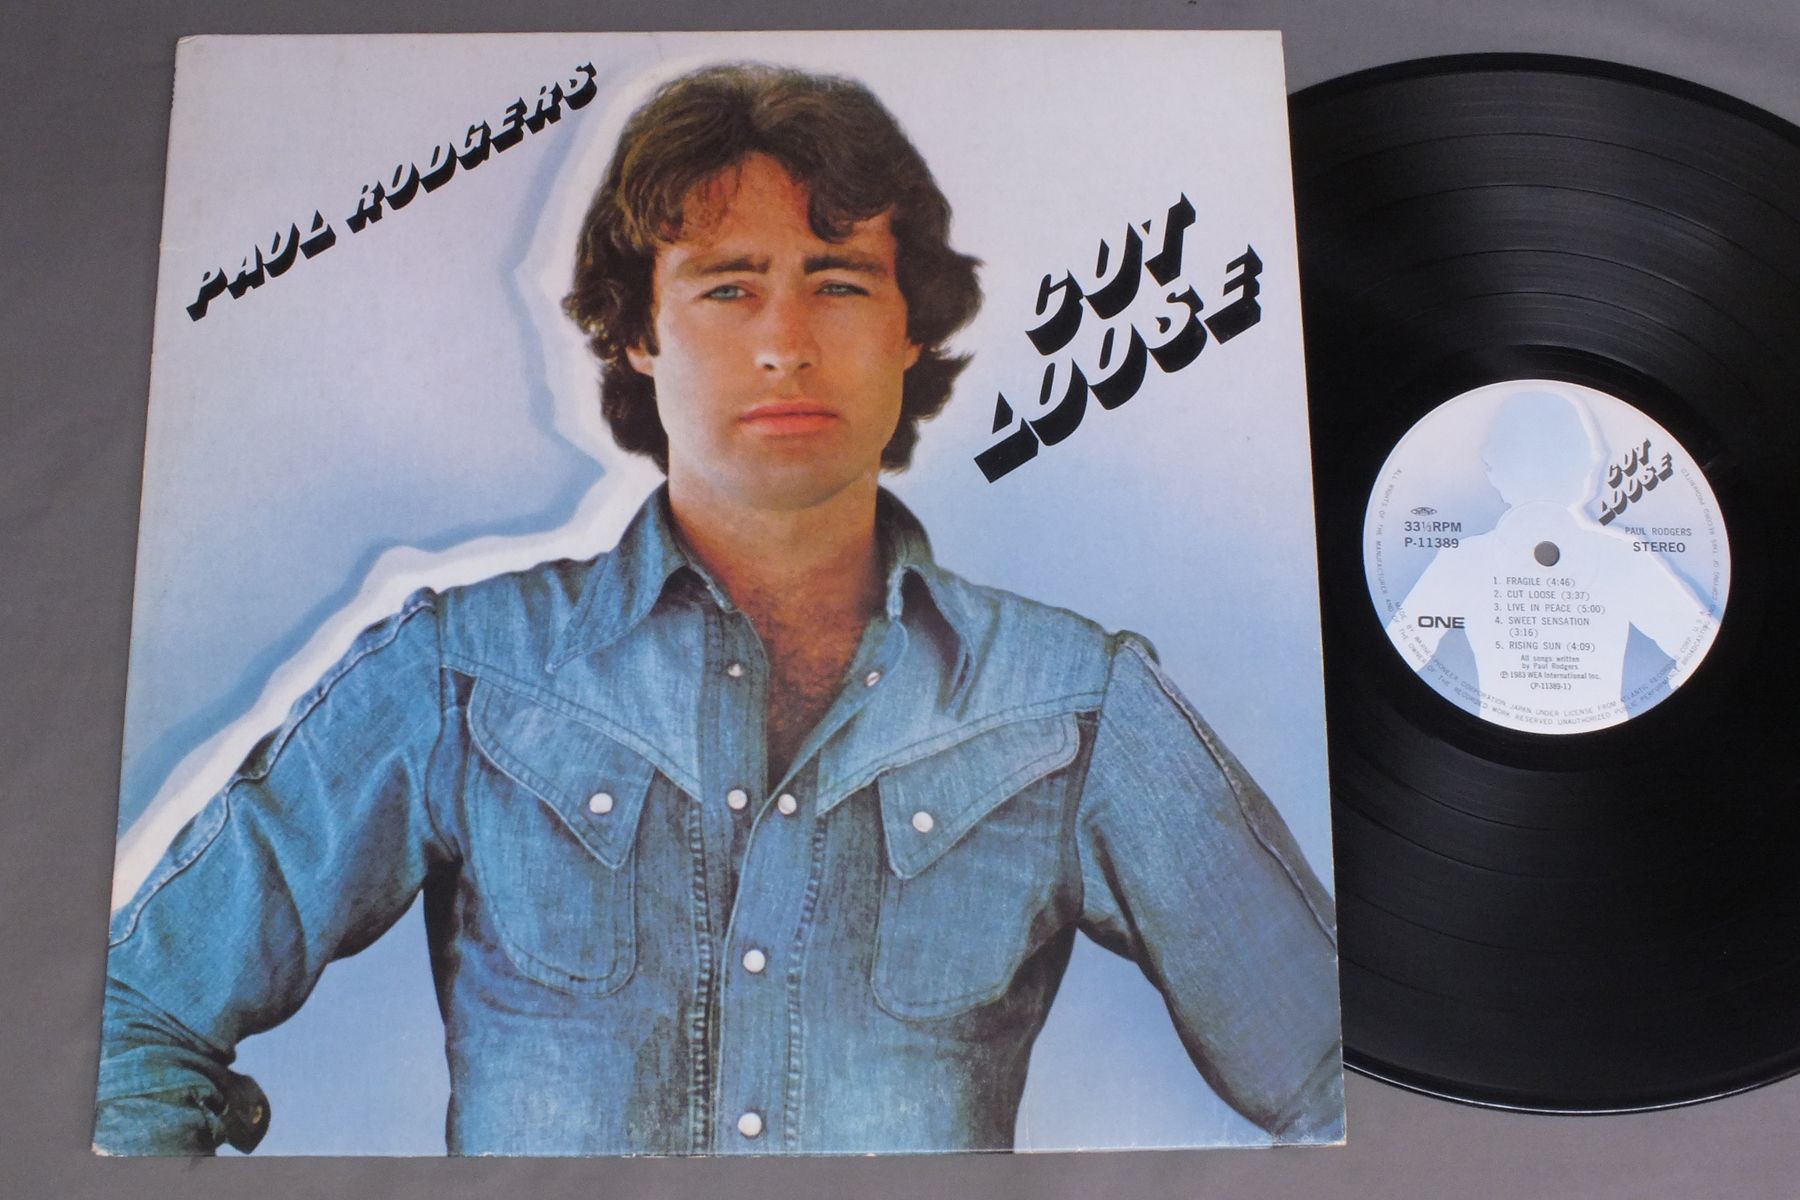 Paul lp. Cut Loose пол Роджерс. Paul Rodgers Cut Loose. Paul Rodgers Electric LP. Paul Rodgers "Now" 1997 LP Vinyl photo.